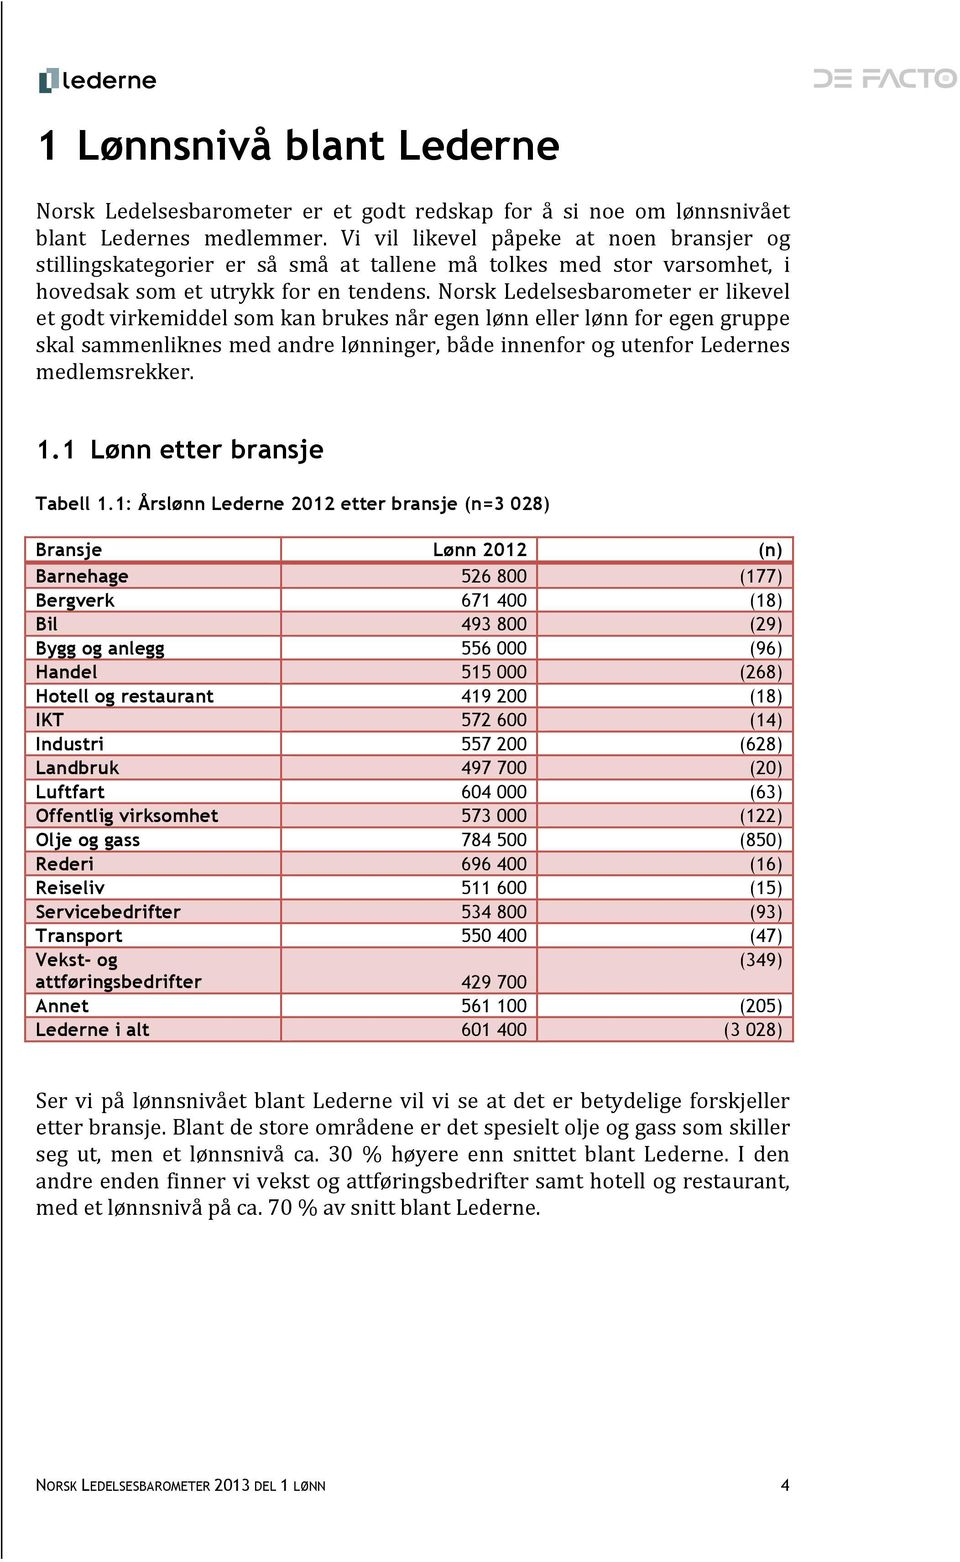 Norsk Ledelsesbarometer er likevel et godt virkemiddel som kan brukes når egen lønn eller lønn for egen gruppe skal sammenliknes med andre lønninger, både innenfor og utenfor Ledernes medlemsrekker.